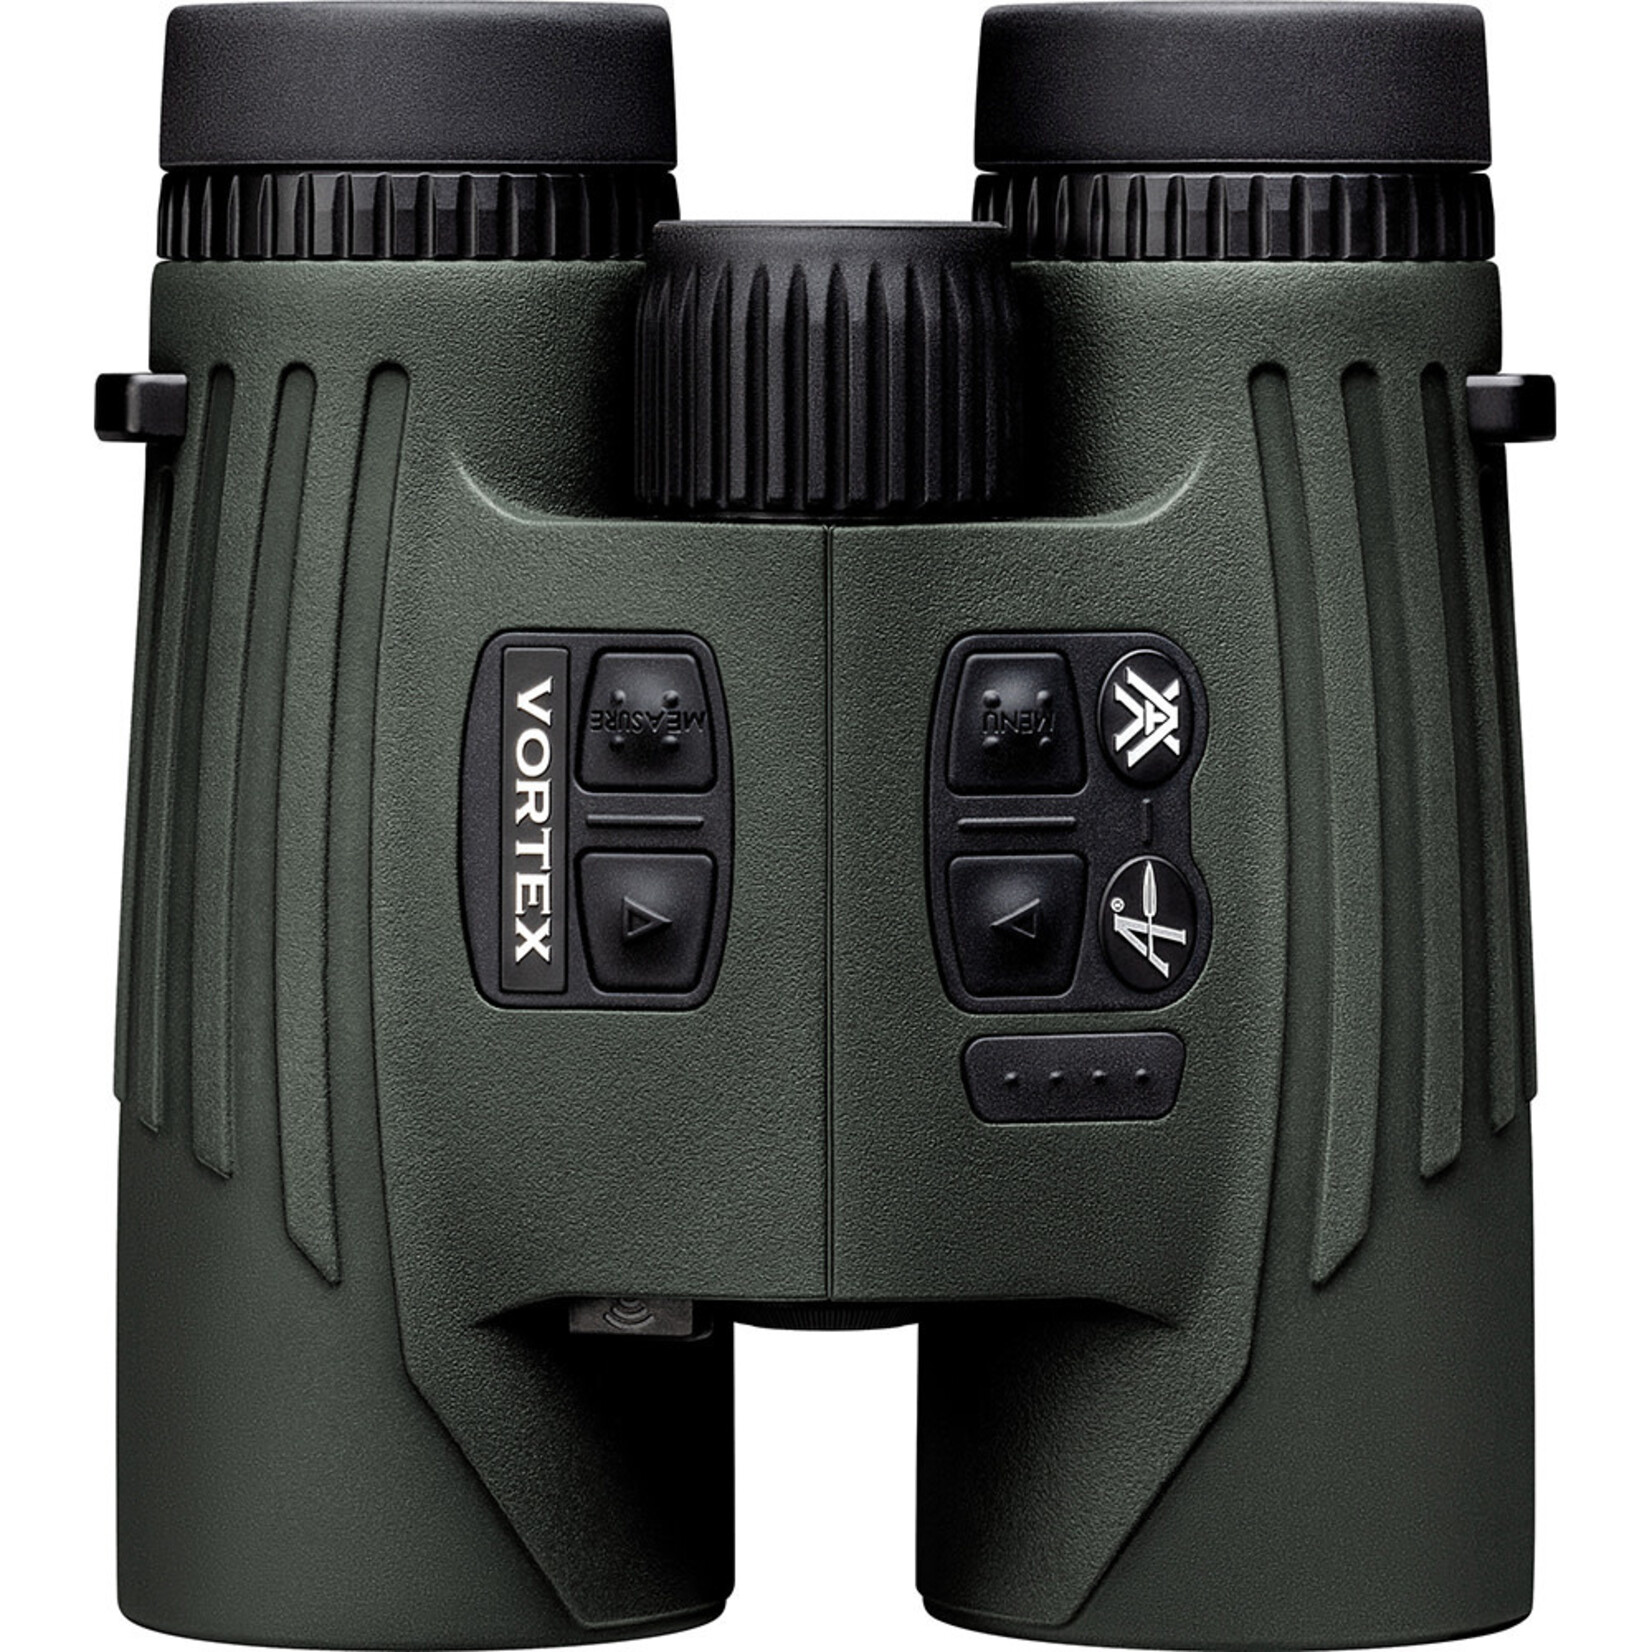 Vortex Vortex Fury HD 5000 Applied Ballistics 10x42 Laser Rangefinder Binocular